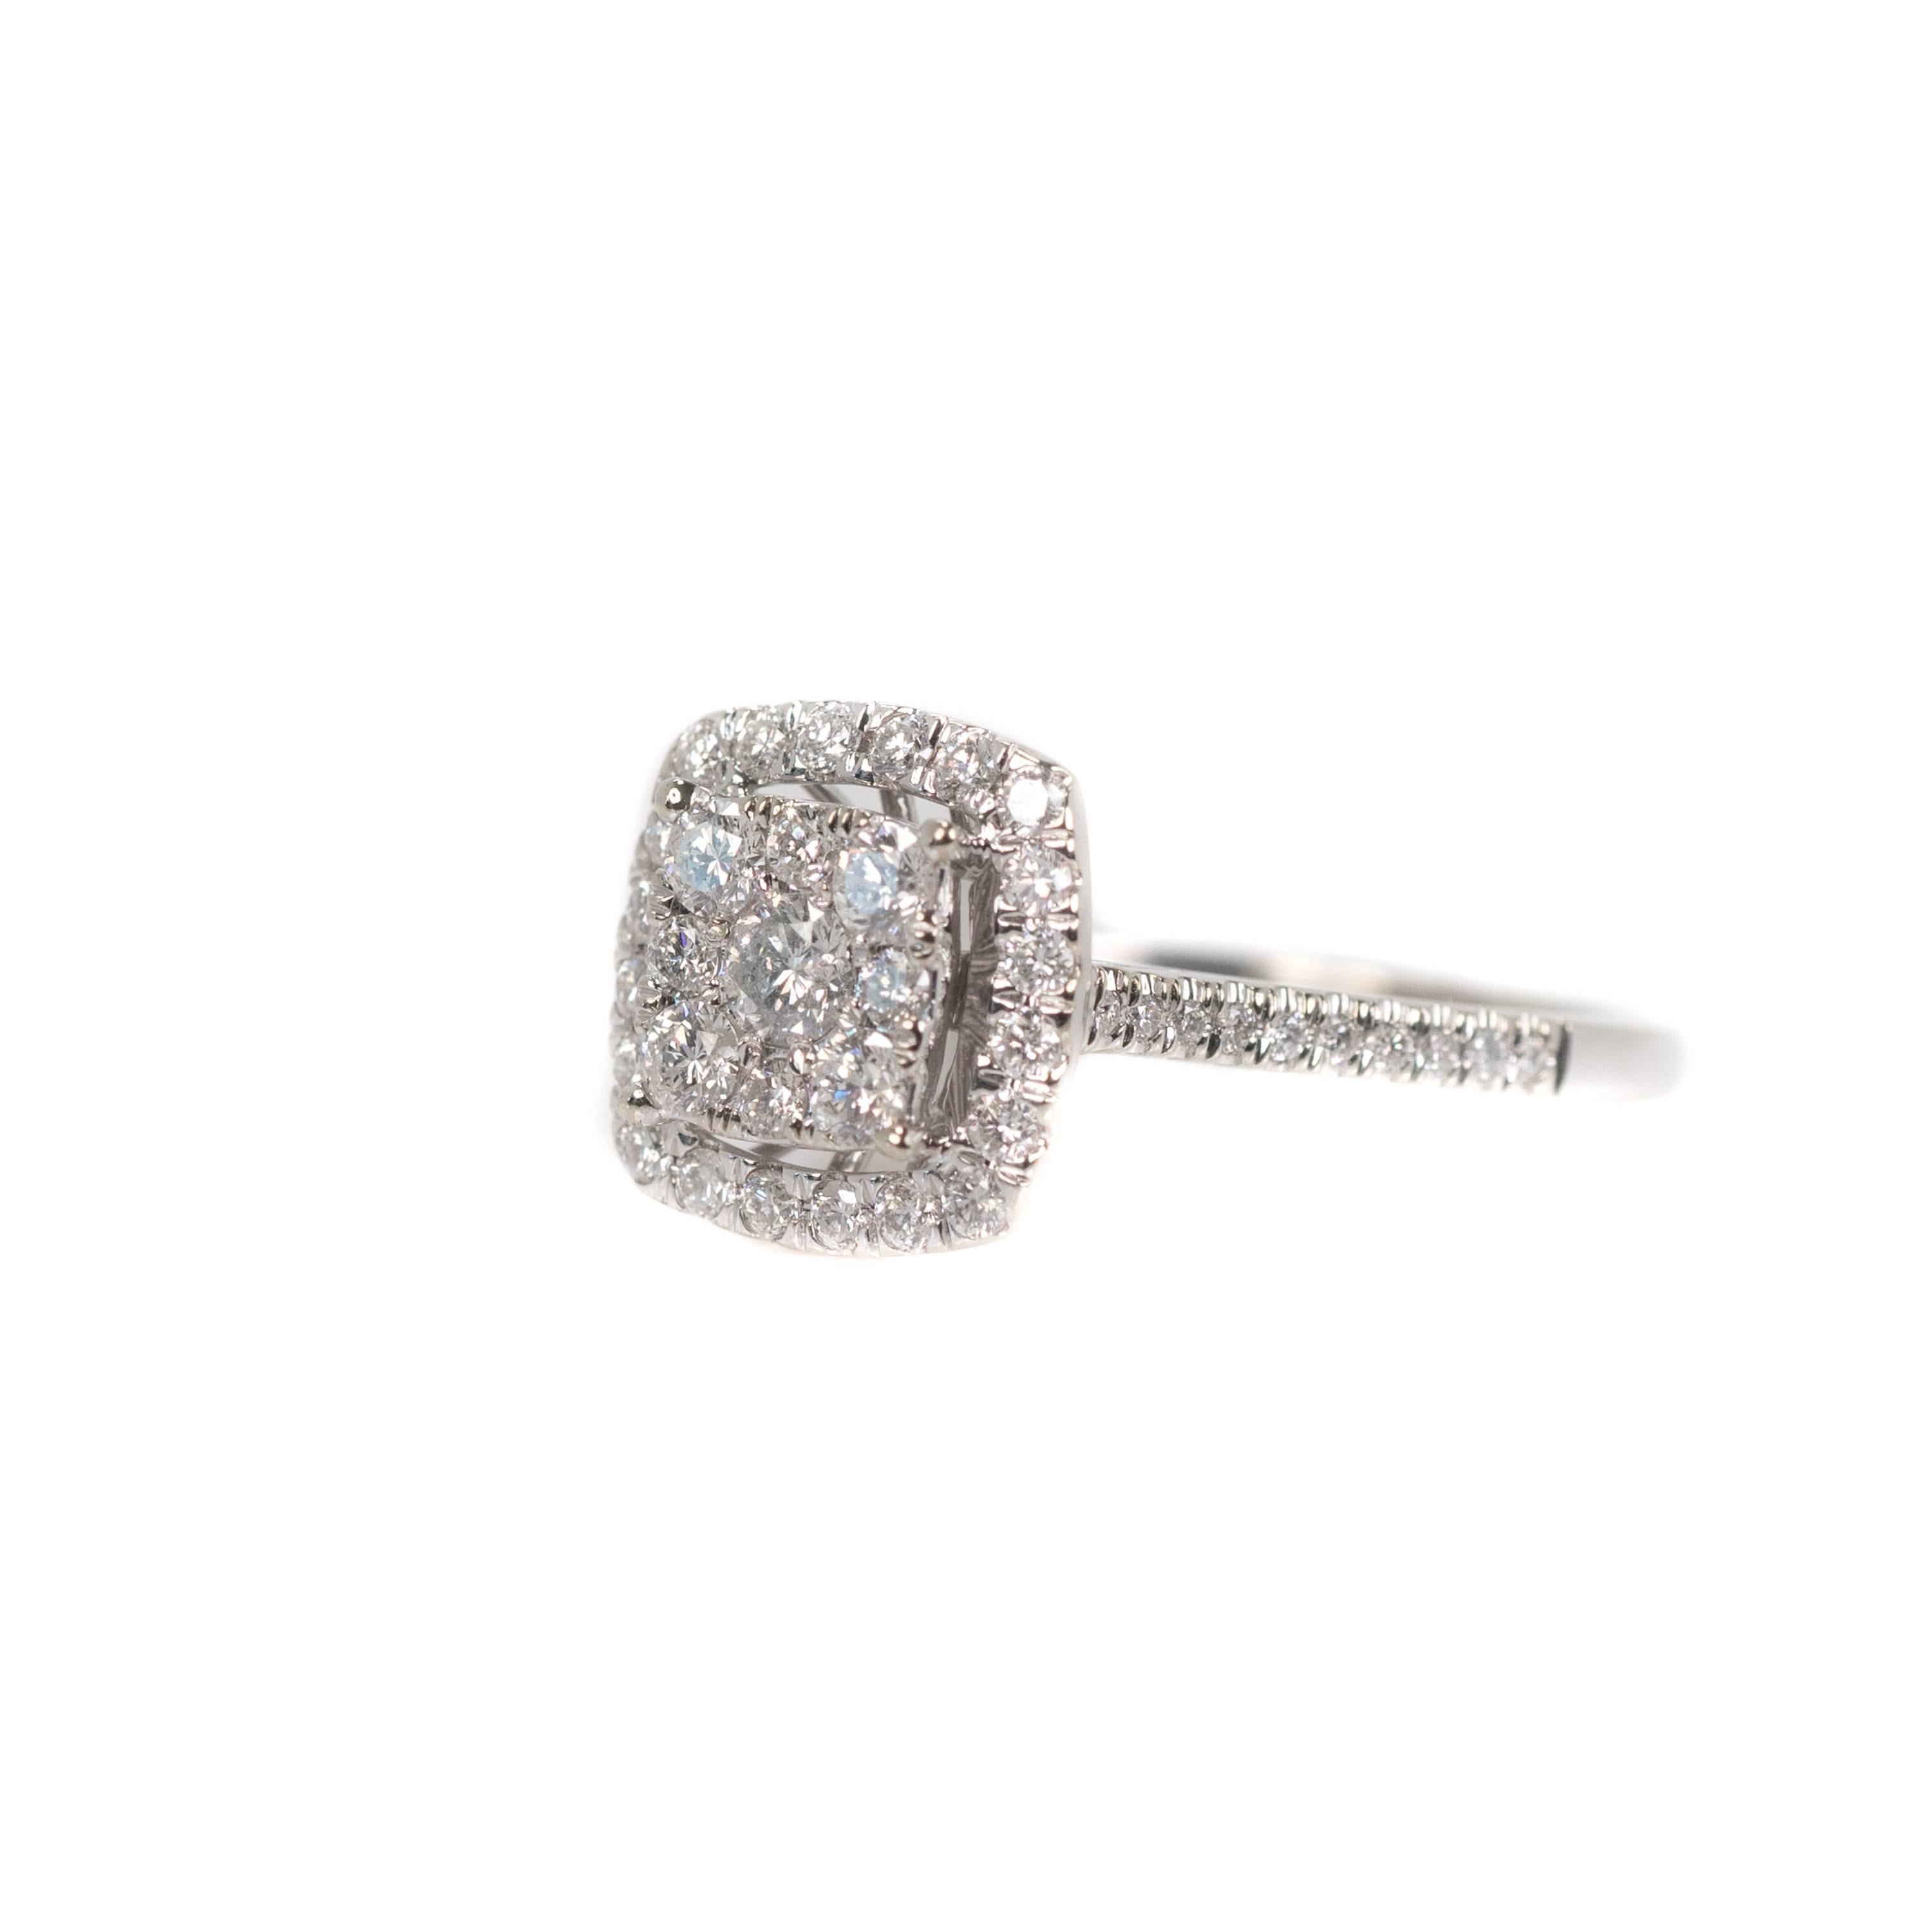 Women's 1 Carat Cluster Diamond Halo Engagement Ring in 10 Karat White Gold